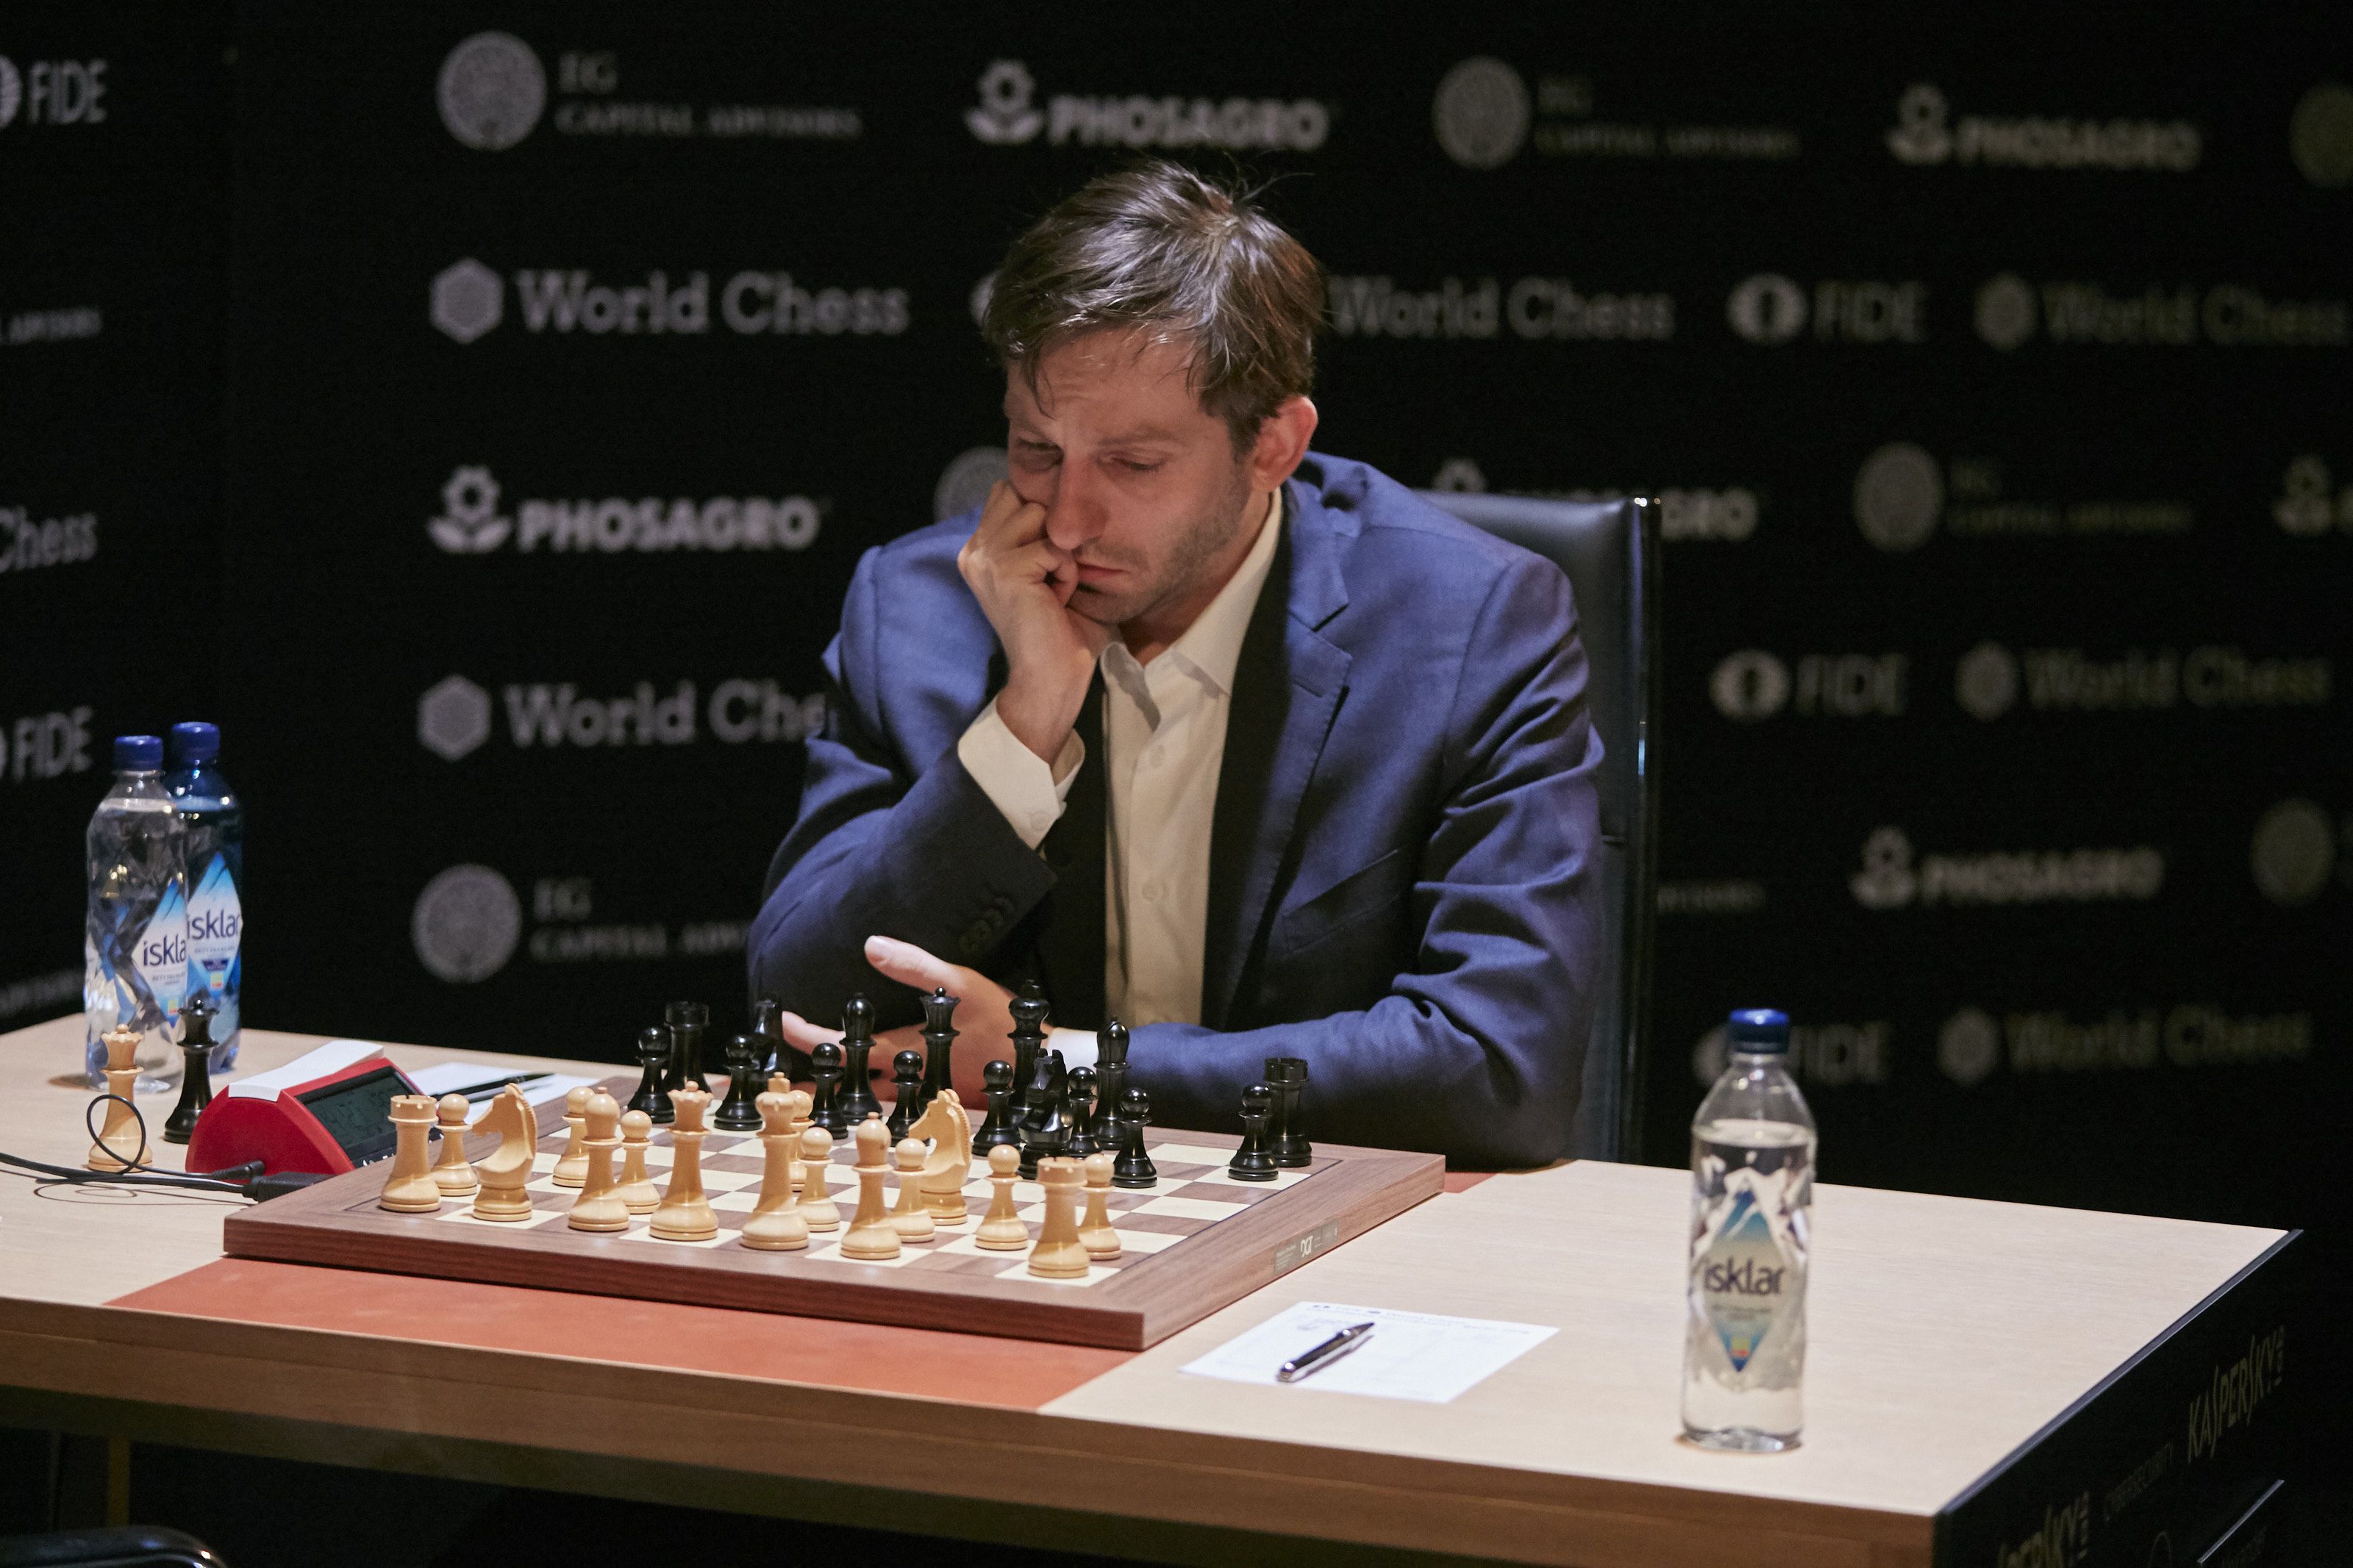 Leállítják az orosz sakkversenyt is /Fotó: GettyImages